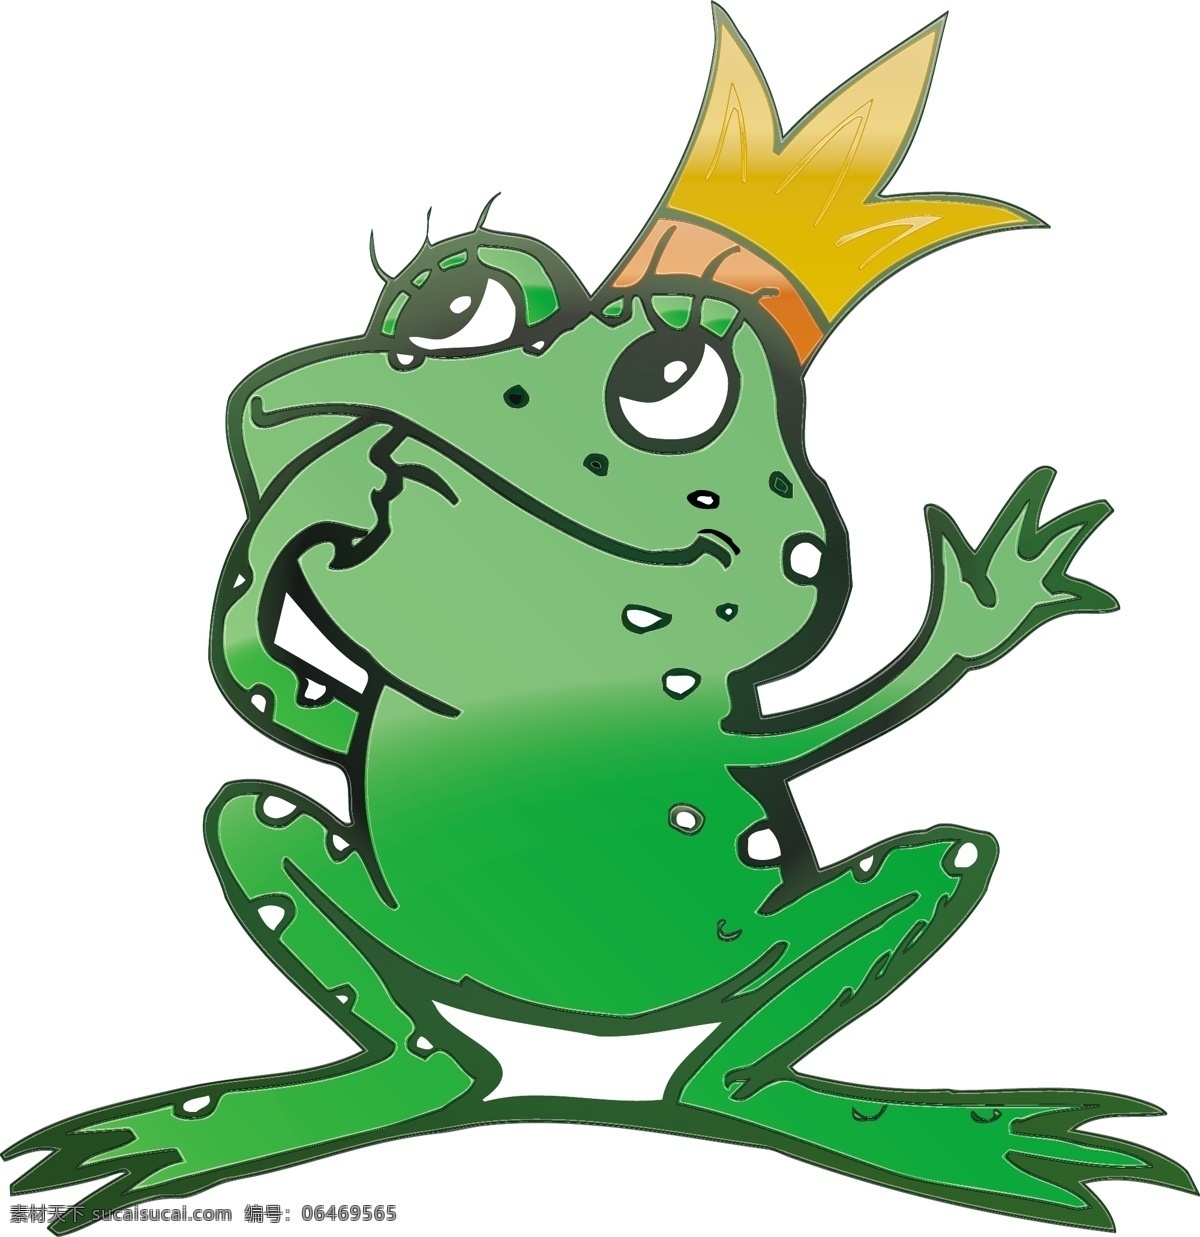 青蛙王子 卡通 矢量 皇冠 可爱 青蛙 童话故事 矢量图 矢量人物